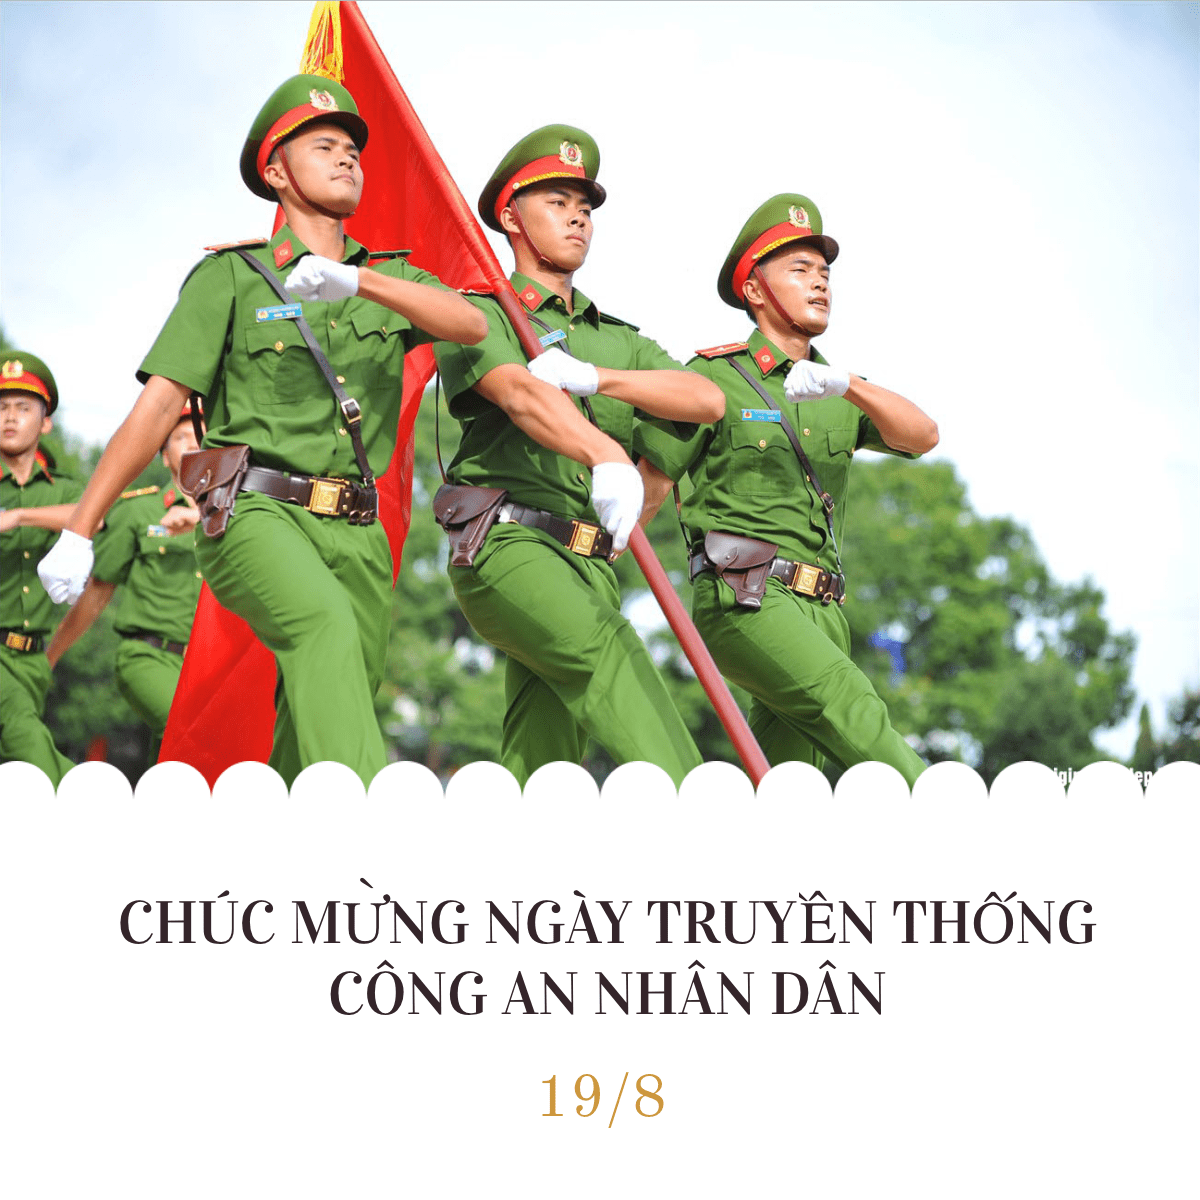 Lịch sử là kho tàng văn hóa tuyệt vời của dân tộc Việt Nam. Để hiểu thêm về những khoảnh khắc quan trọng trong lịch sử, hãy cùng khám phá những hình ảnh tuyệt đẹp, chứa đựng nhiều giá trị tinh thần, văn hóa và xã hội.